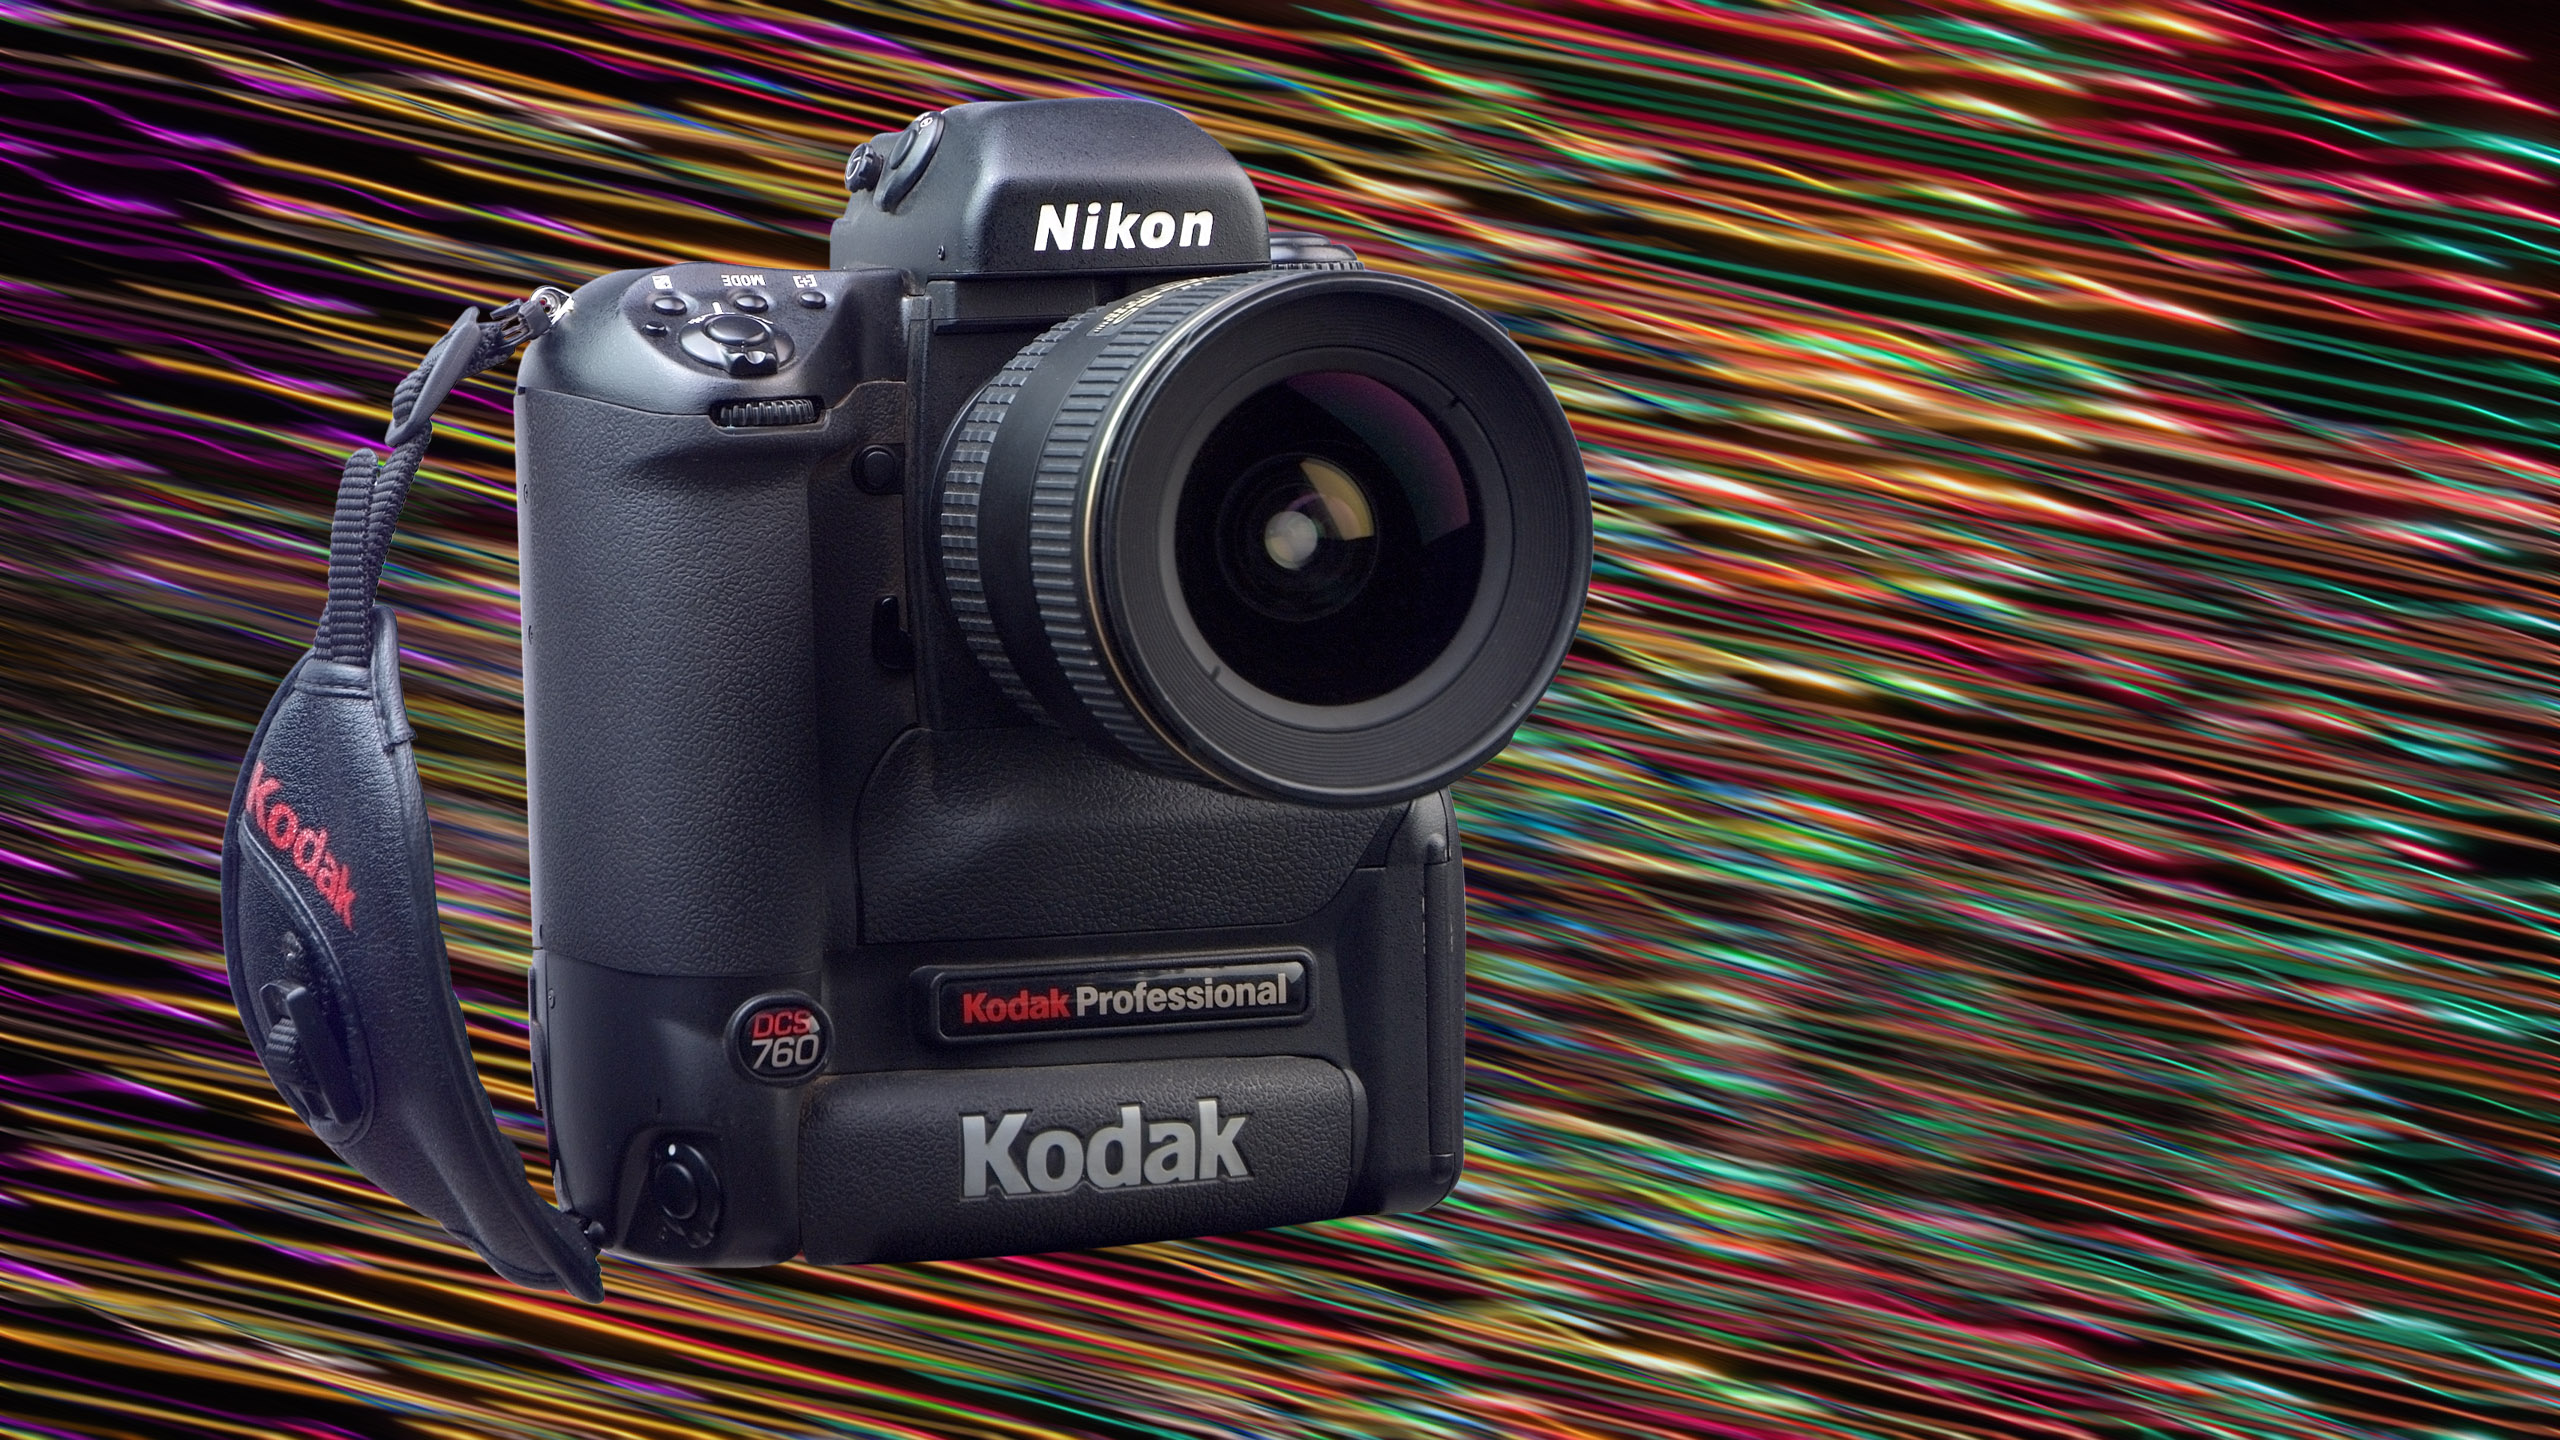 Kodak DCS-760 the 6.1 megapixel digital camera from 2001